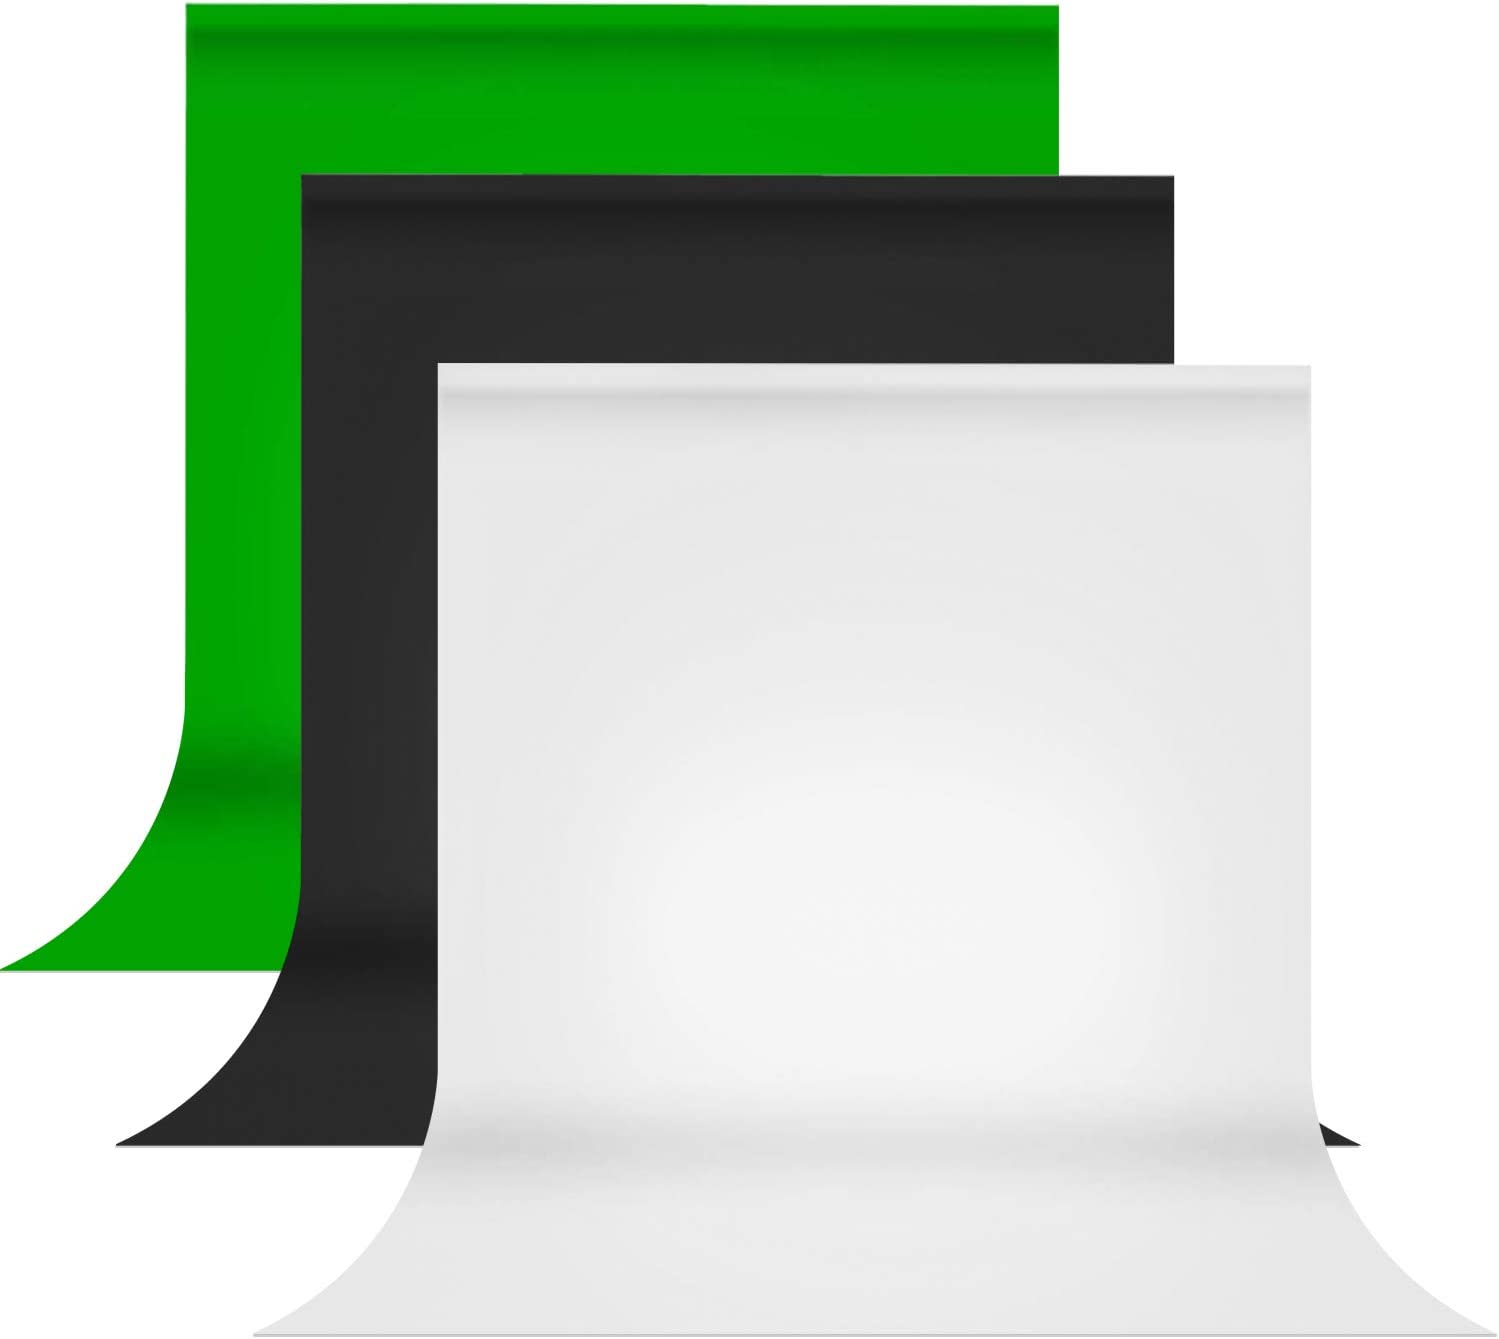 Julius Studio PROMO05 AM1 - Kit de telón de fondo de muselina para estudio fotográfico, color negro, blanco, verde, material de tela de alta calidad